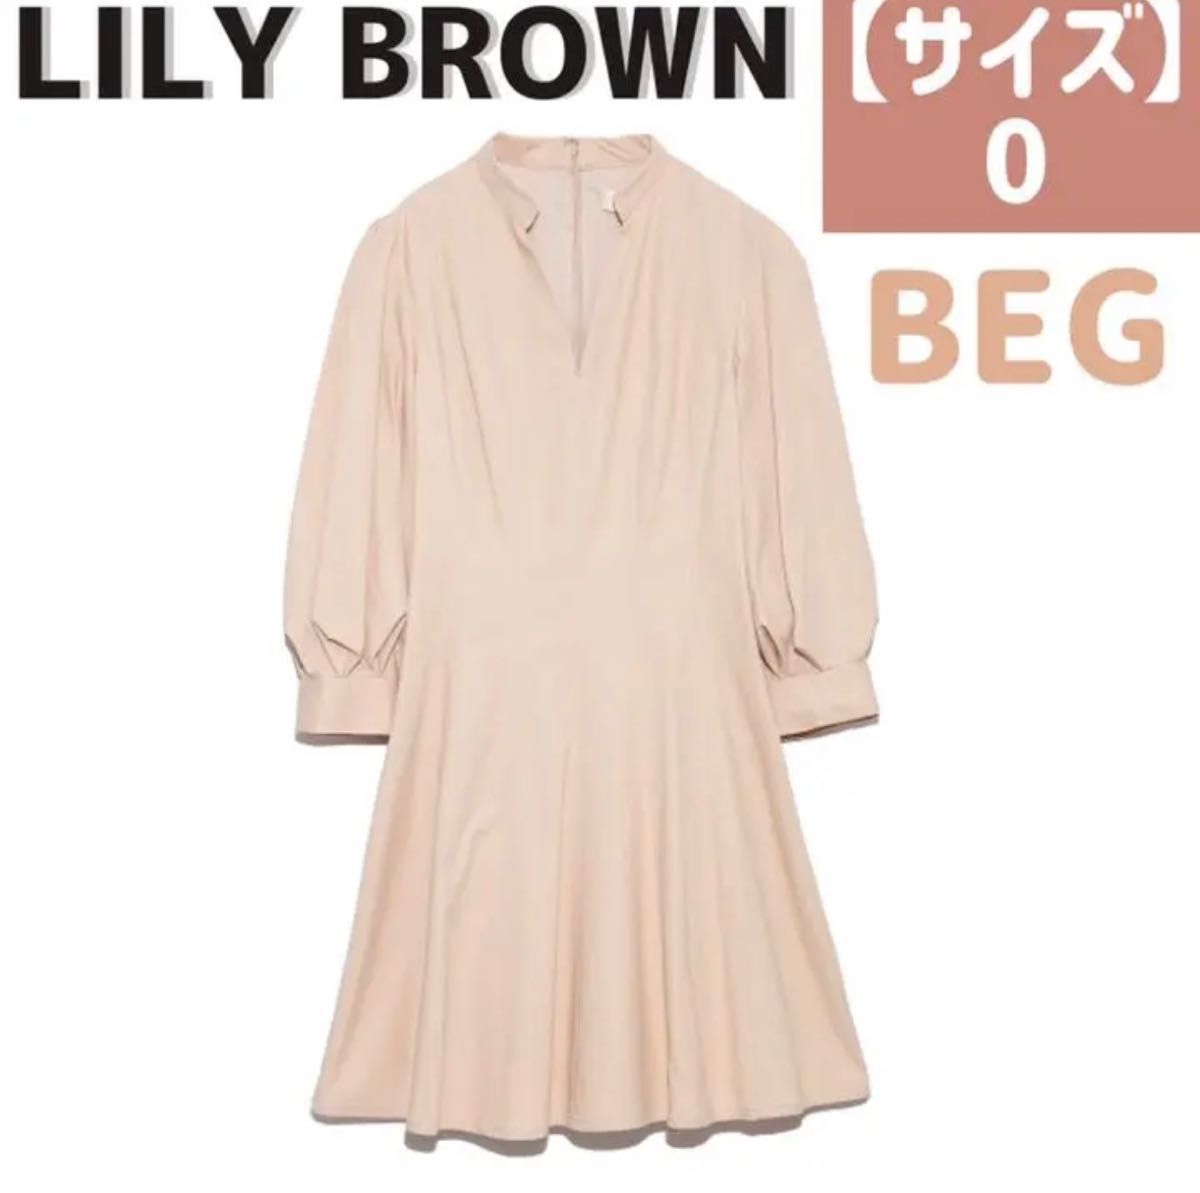 リリーブラウン Lily Brown 袖ボリュームワンピース【0】BEG ベージュ